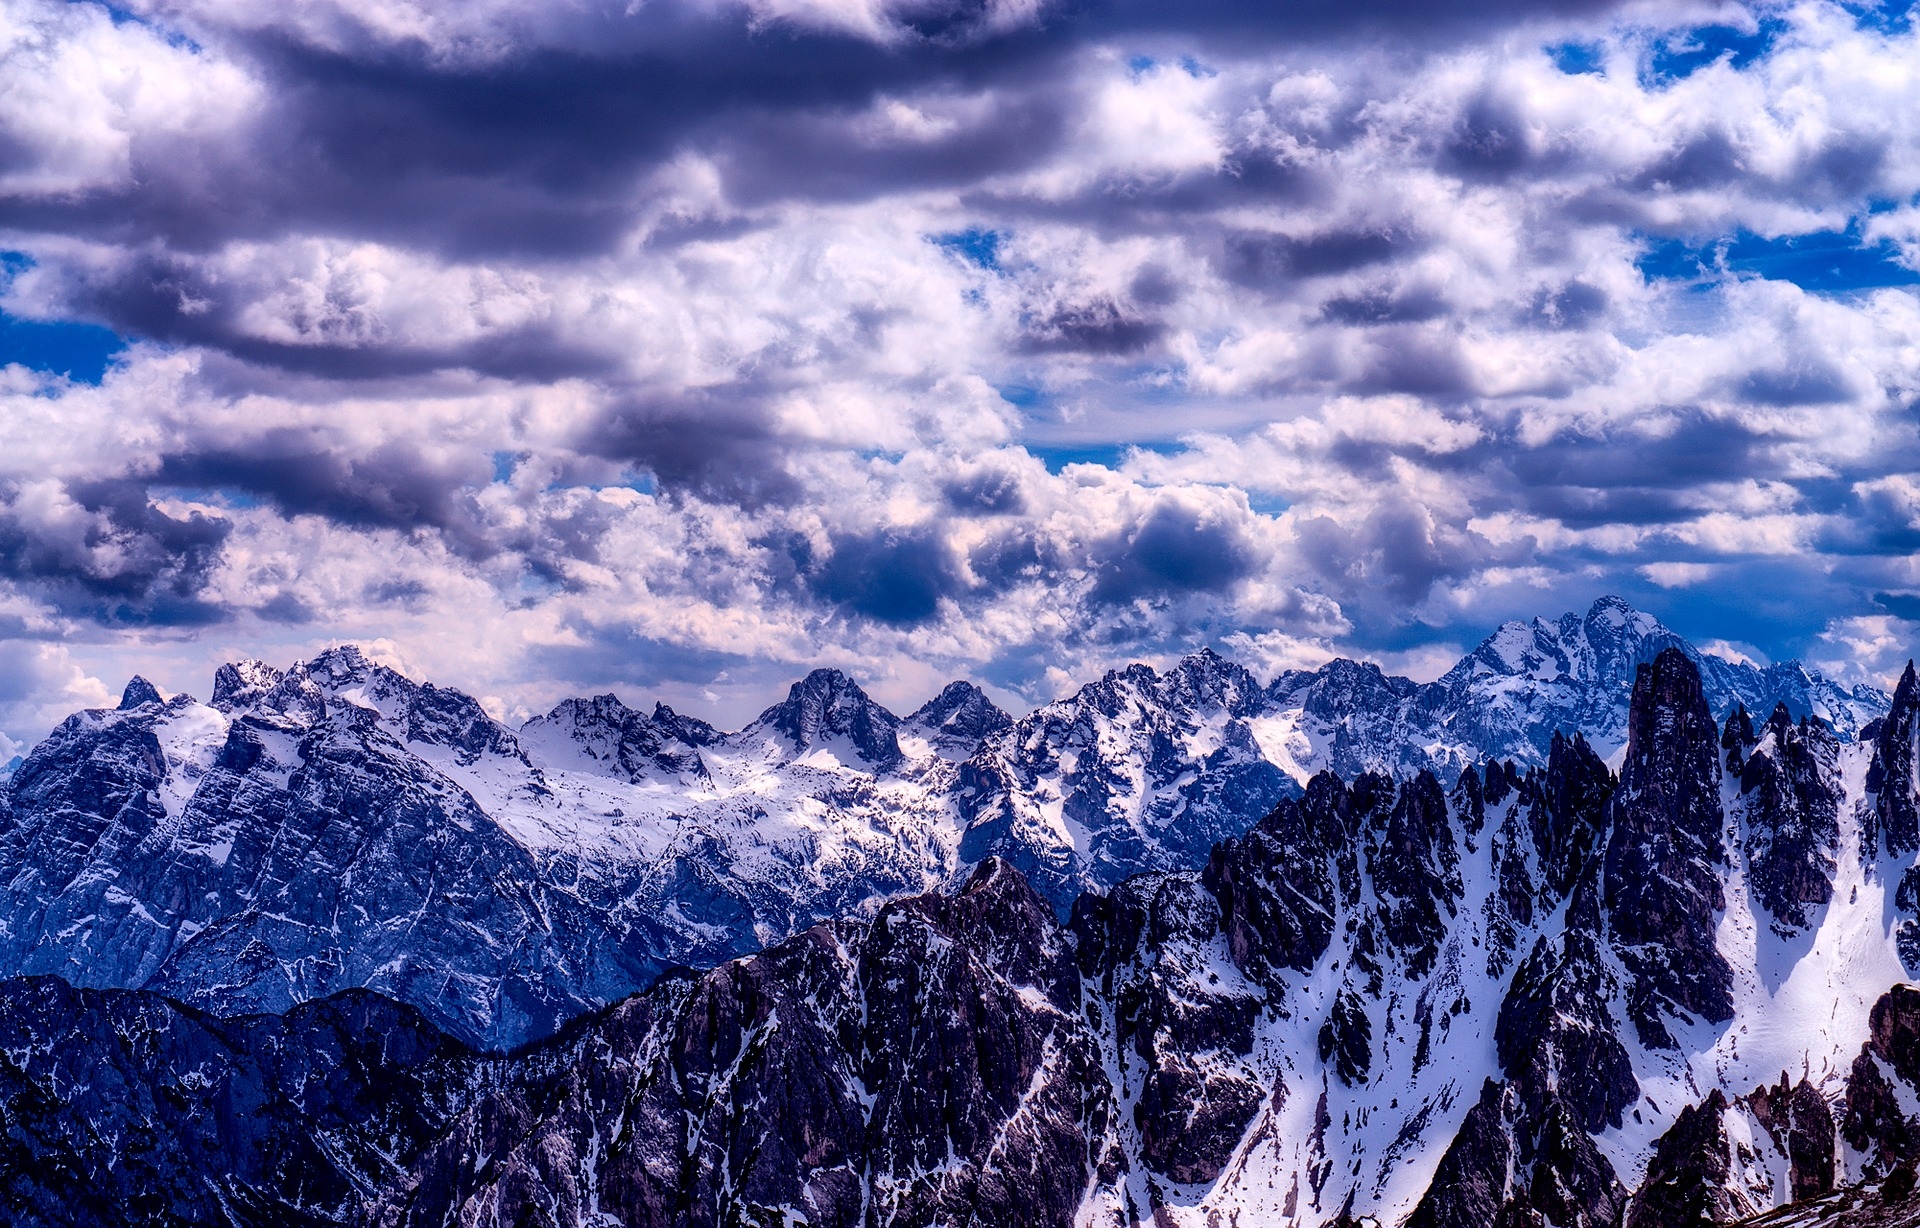 https://pixabay.com/en/italy-mountains-winter-snow-rocky-2420772/